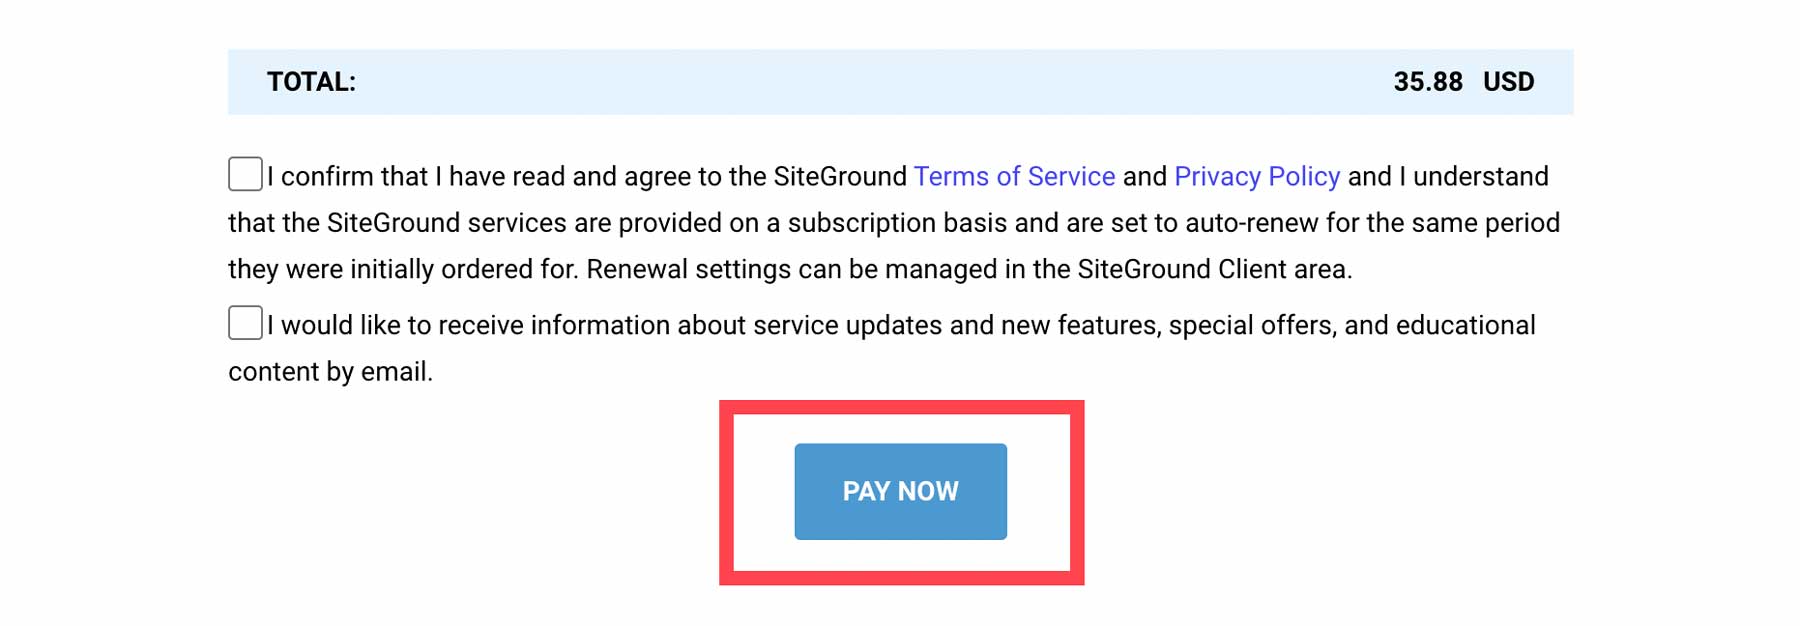 خرید SiteGround خود را تکمیل کنید